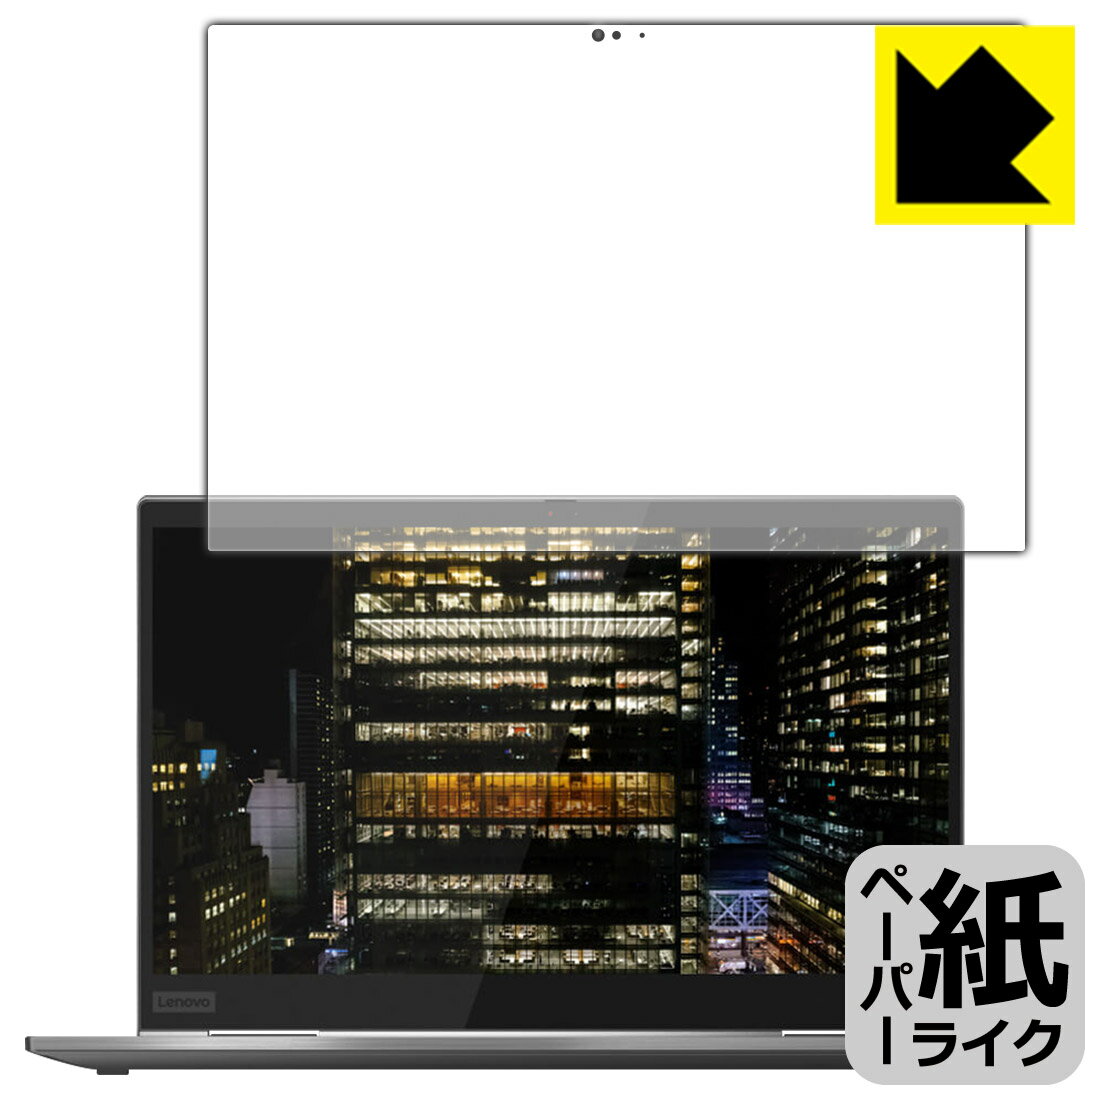 ペーパーライク保護フィルム ThinkPad X1 Yoga gen 5 (2020モデル) 日本製 自社製造直販